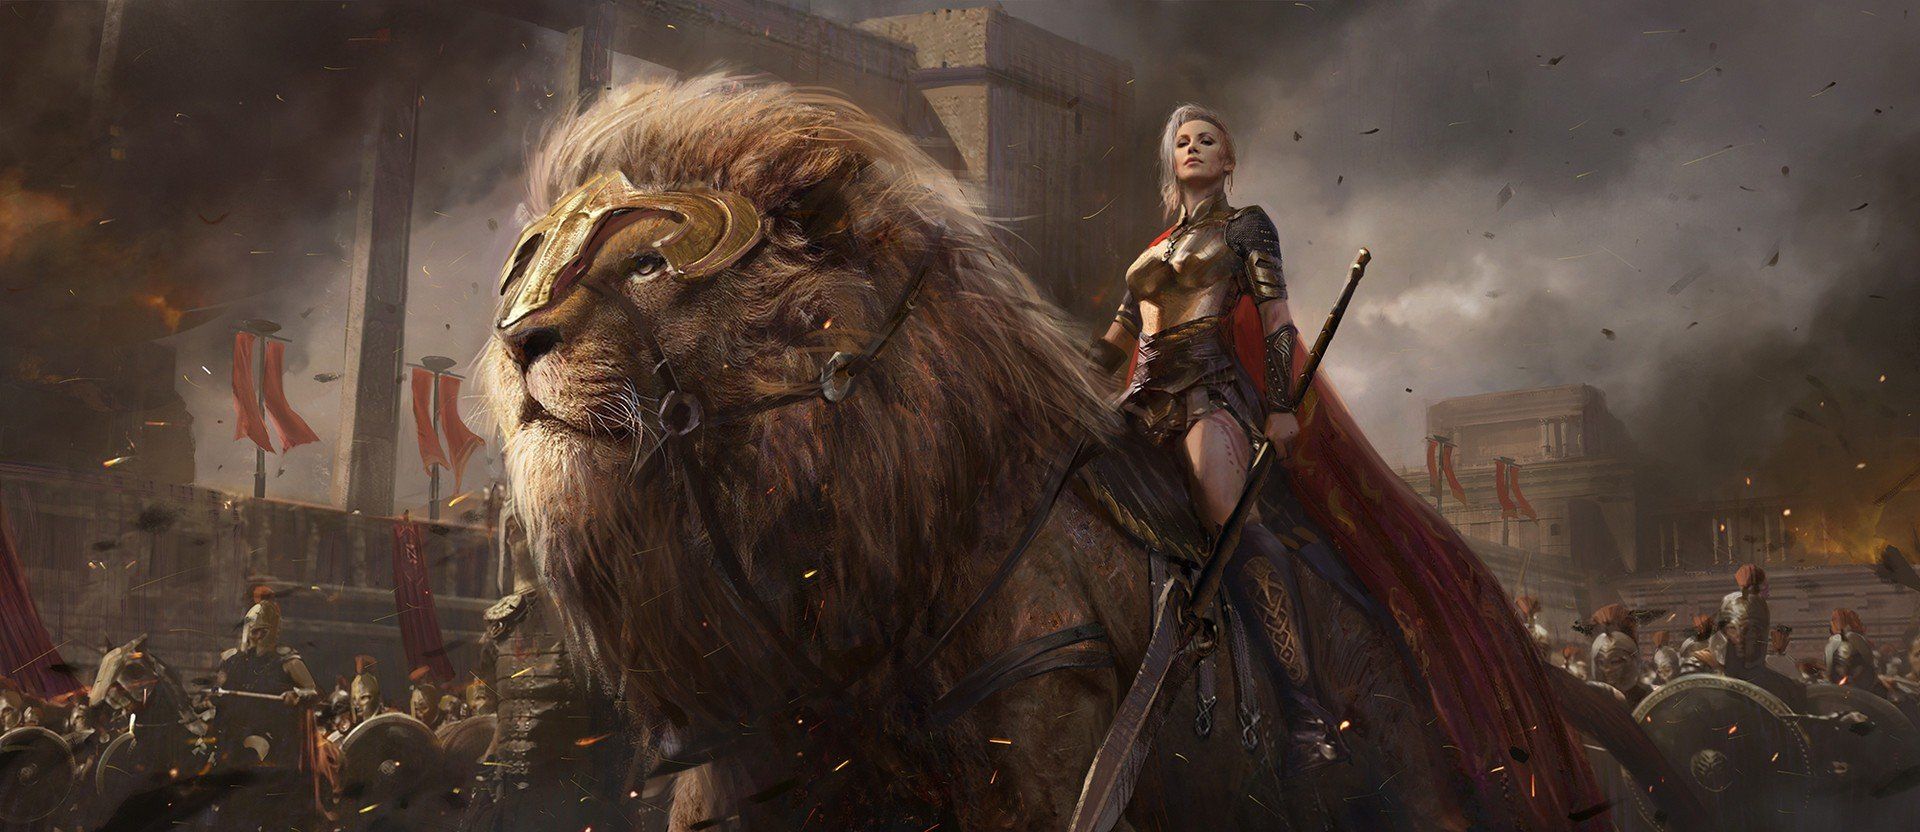 warrior armor fantasy art lion wallpaper